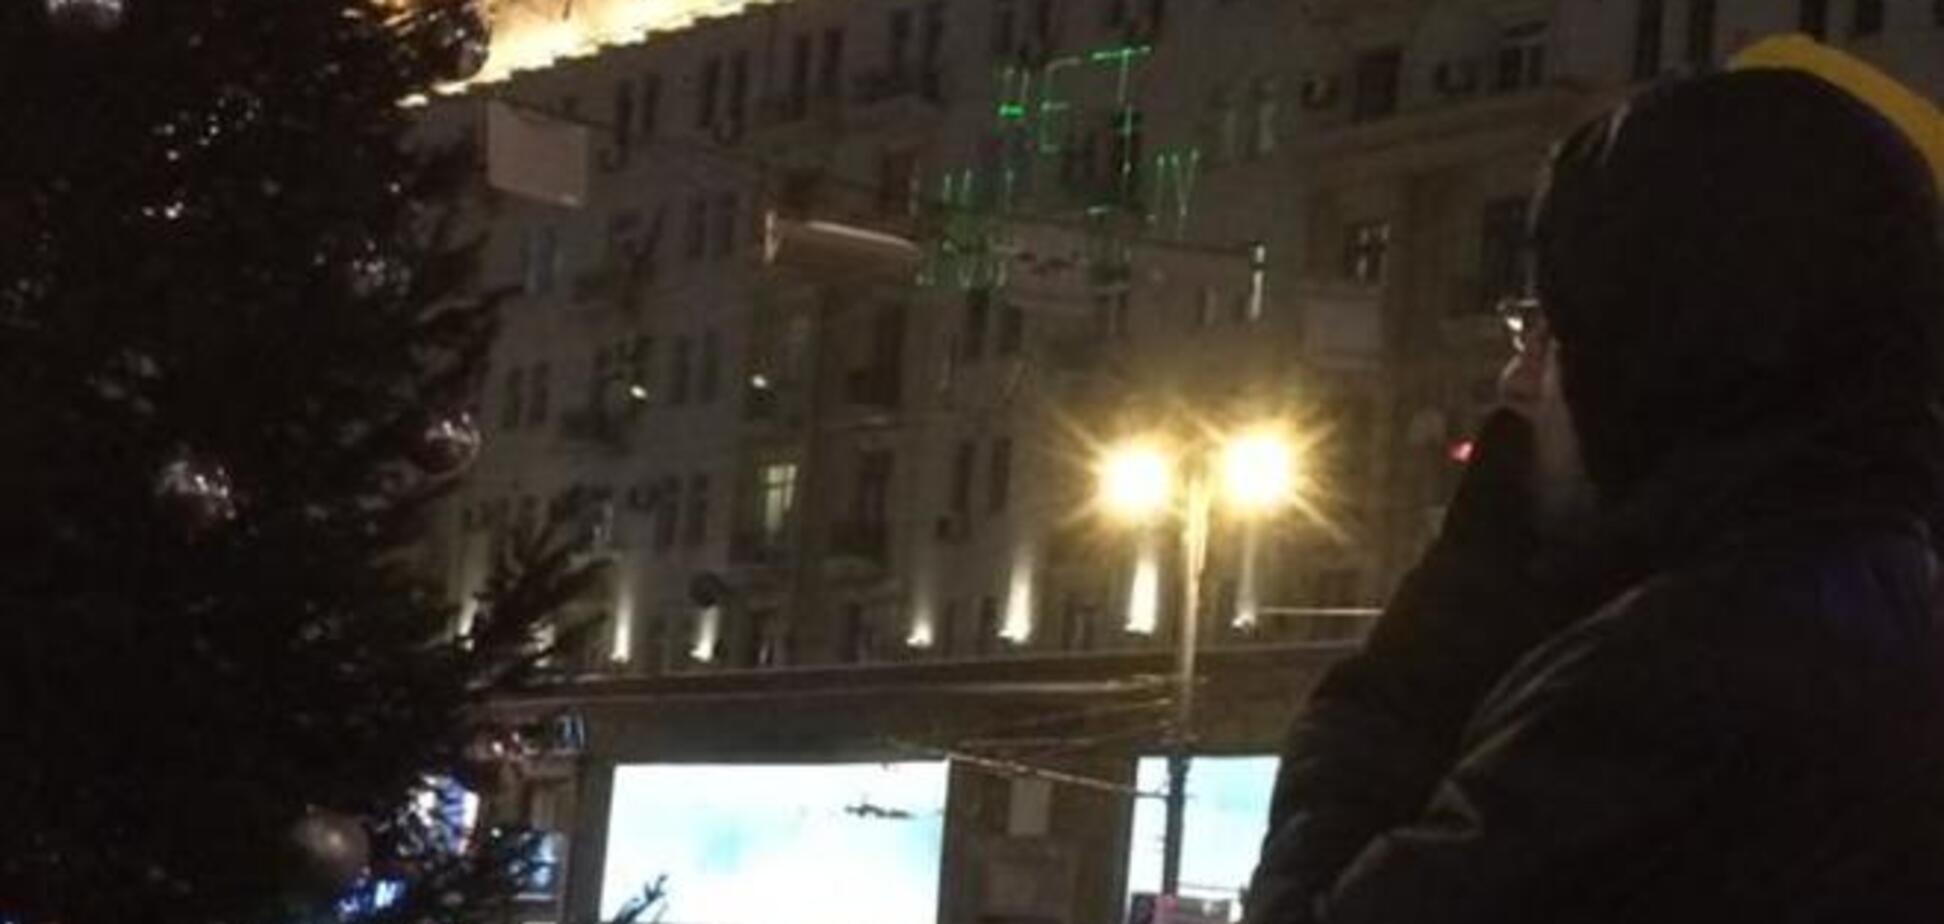 Возле Манежки на доме лазером вывели 'Нет Майдану в Москве!': фотофакт